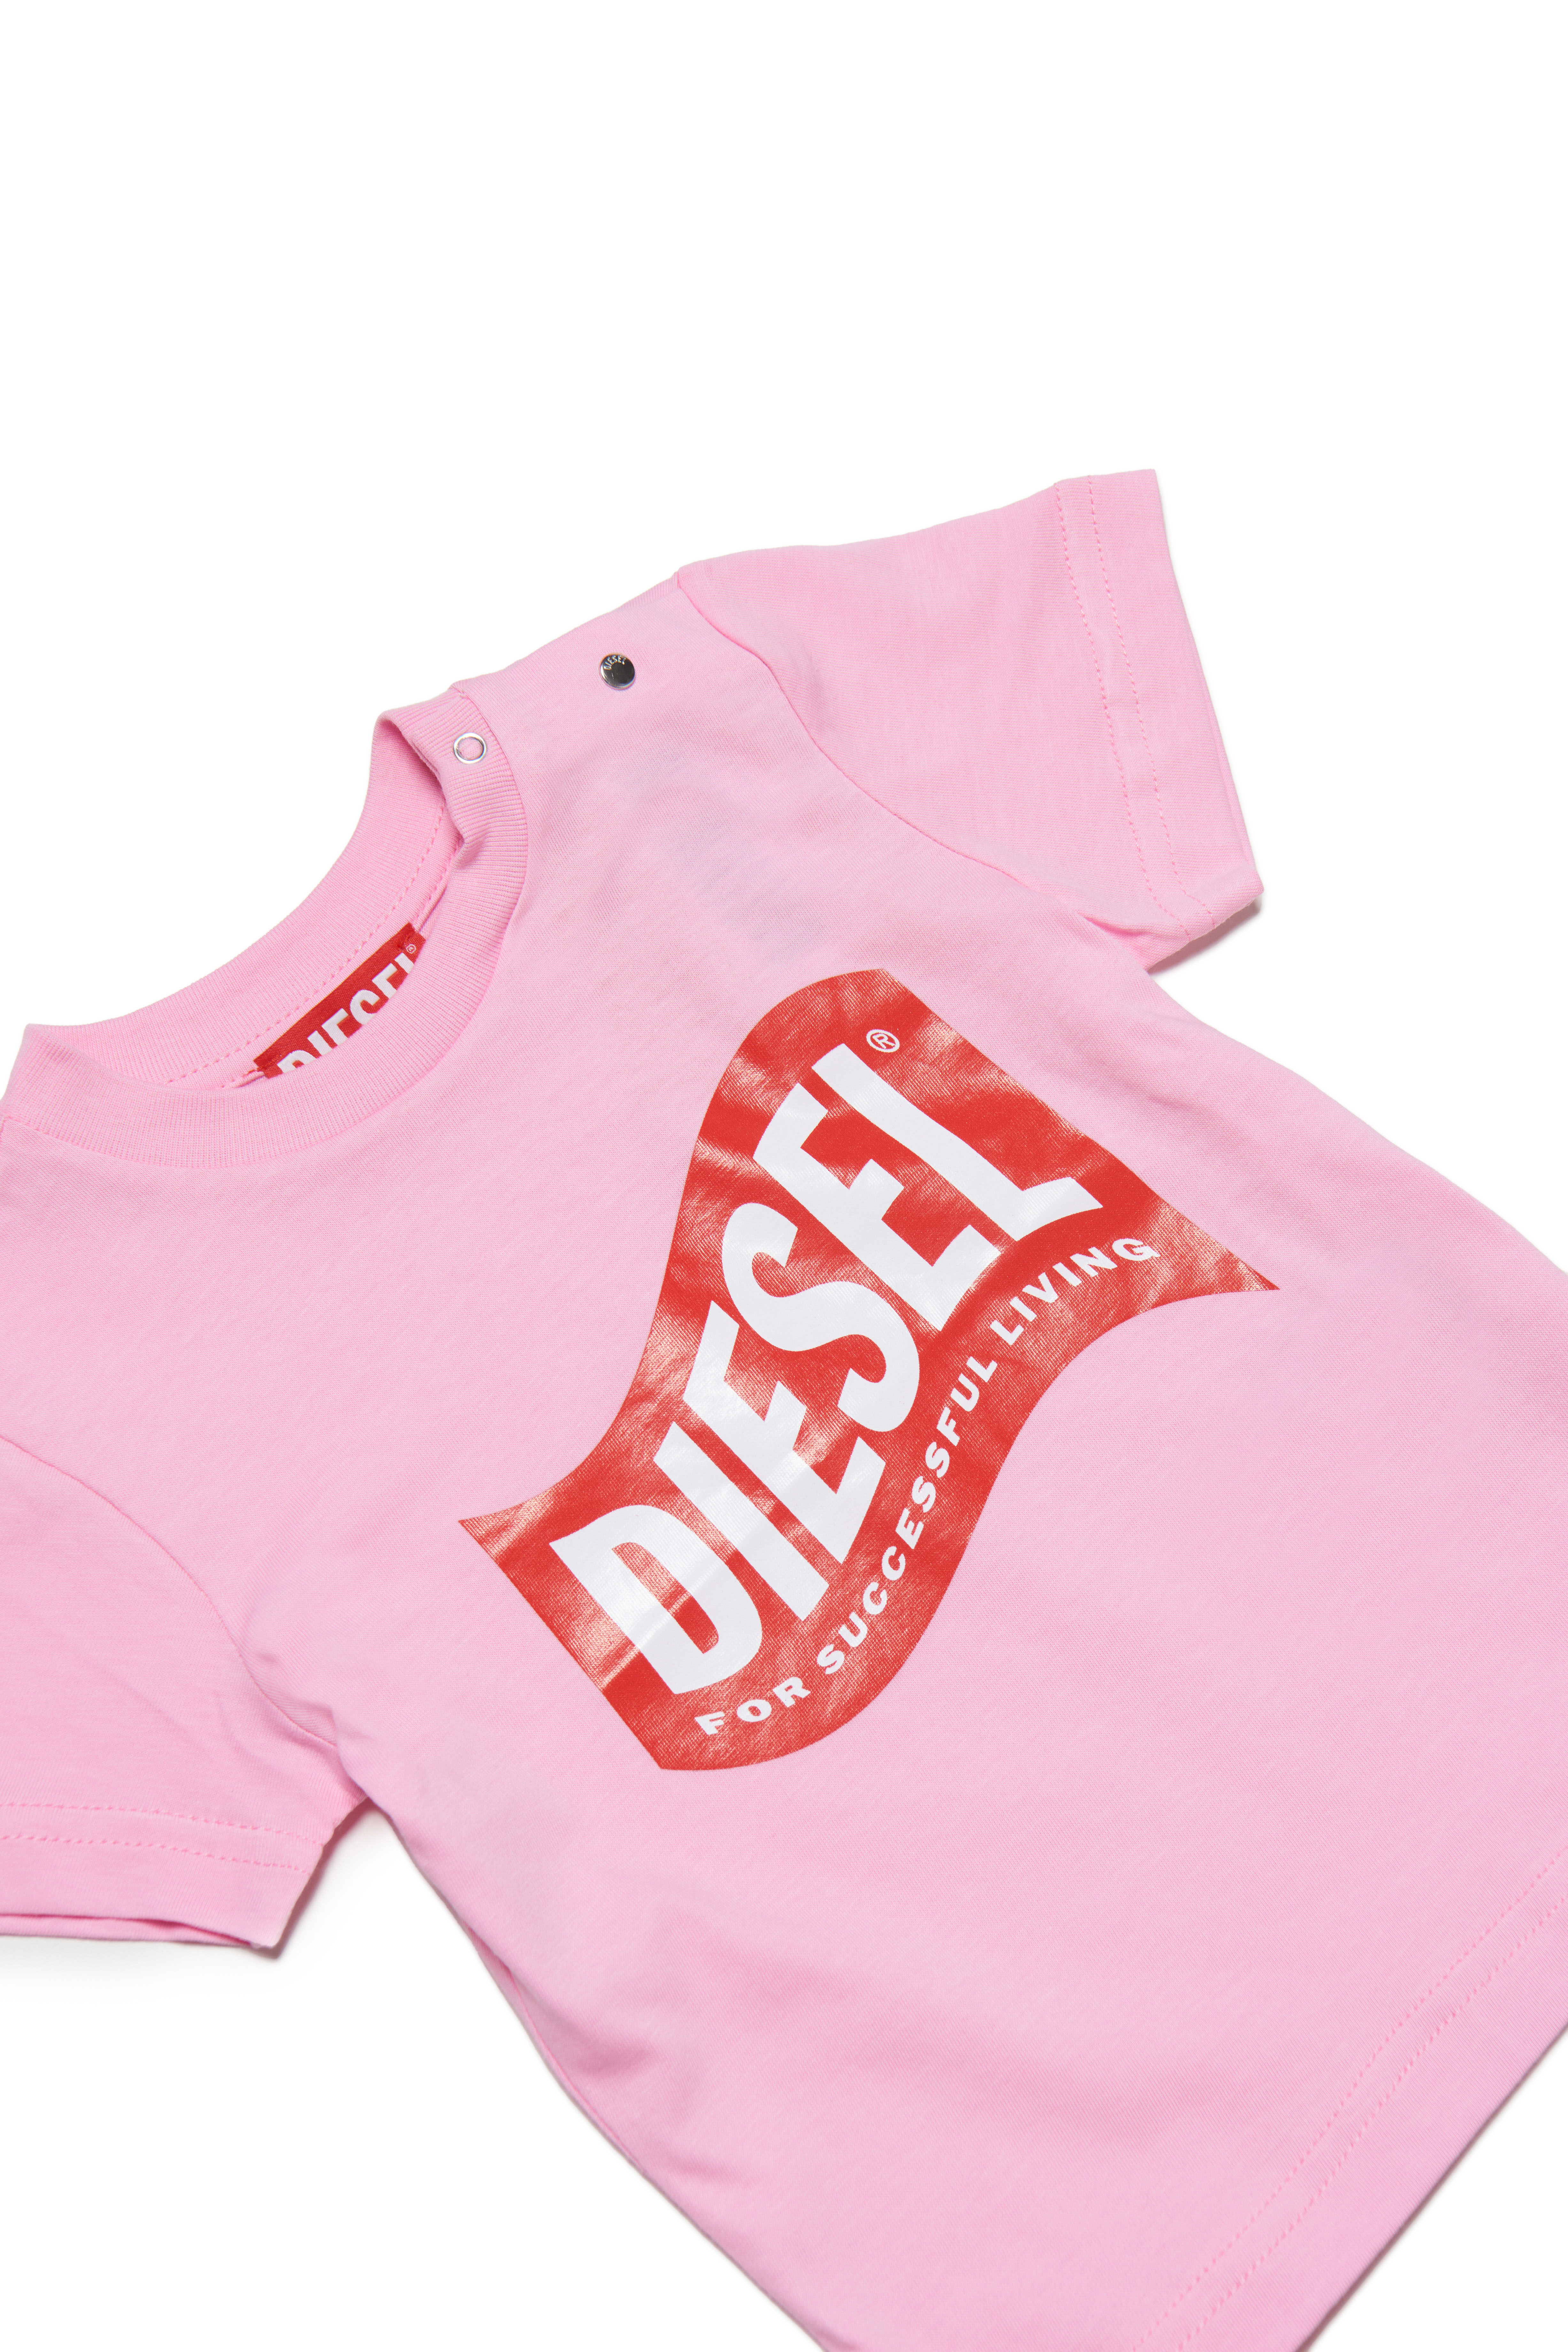 Diesel - TLINB, Pink - Image 3